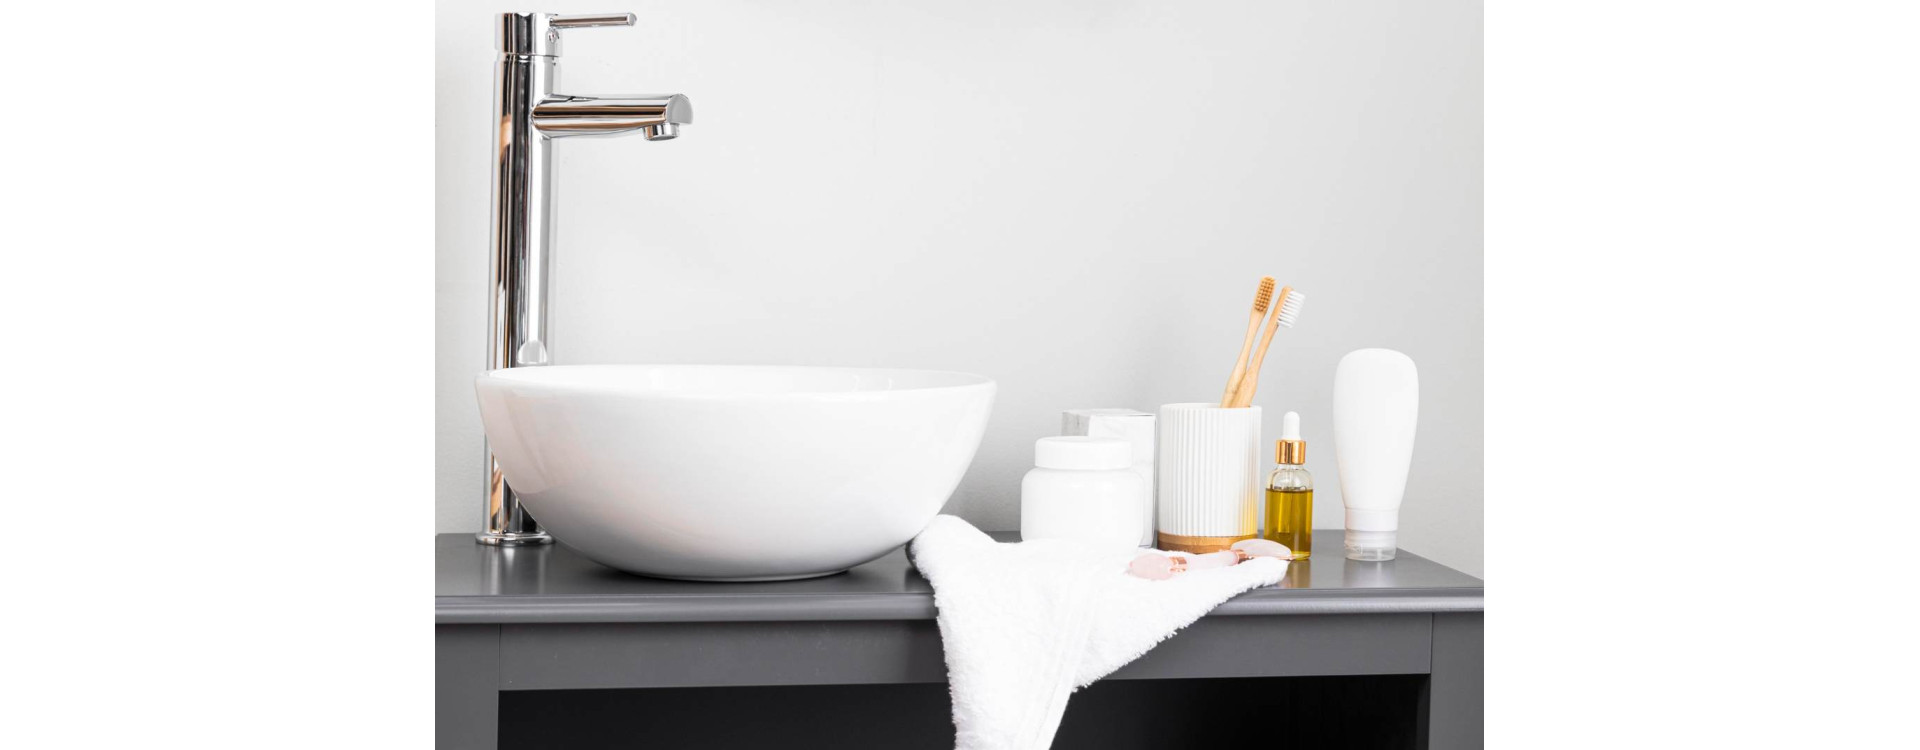 Jak dbać o czystość i utrzymanie umywalek marki Bathco?